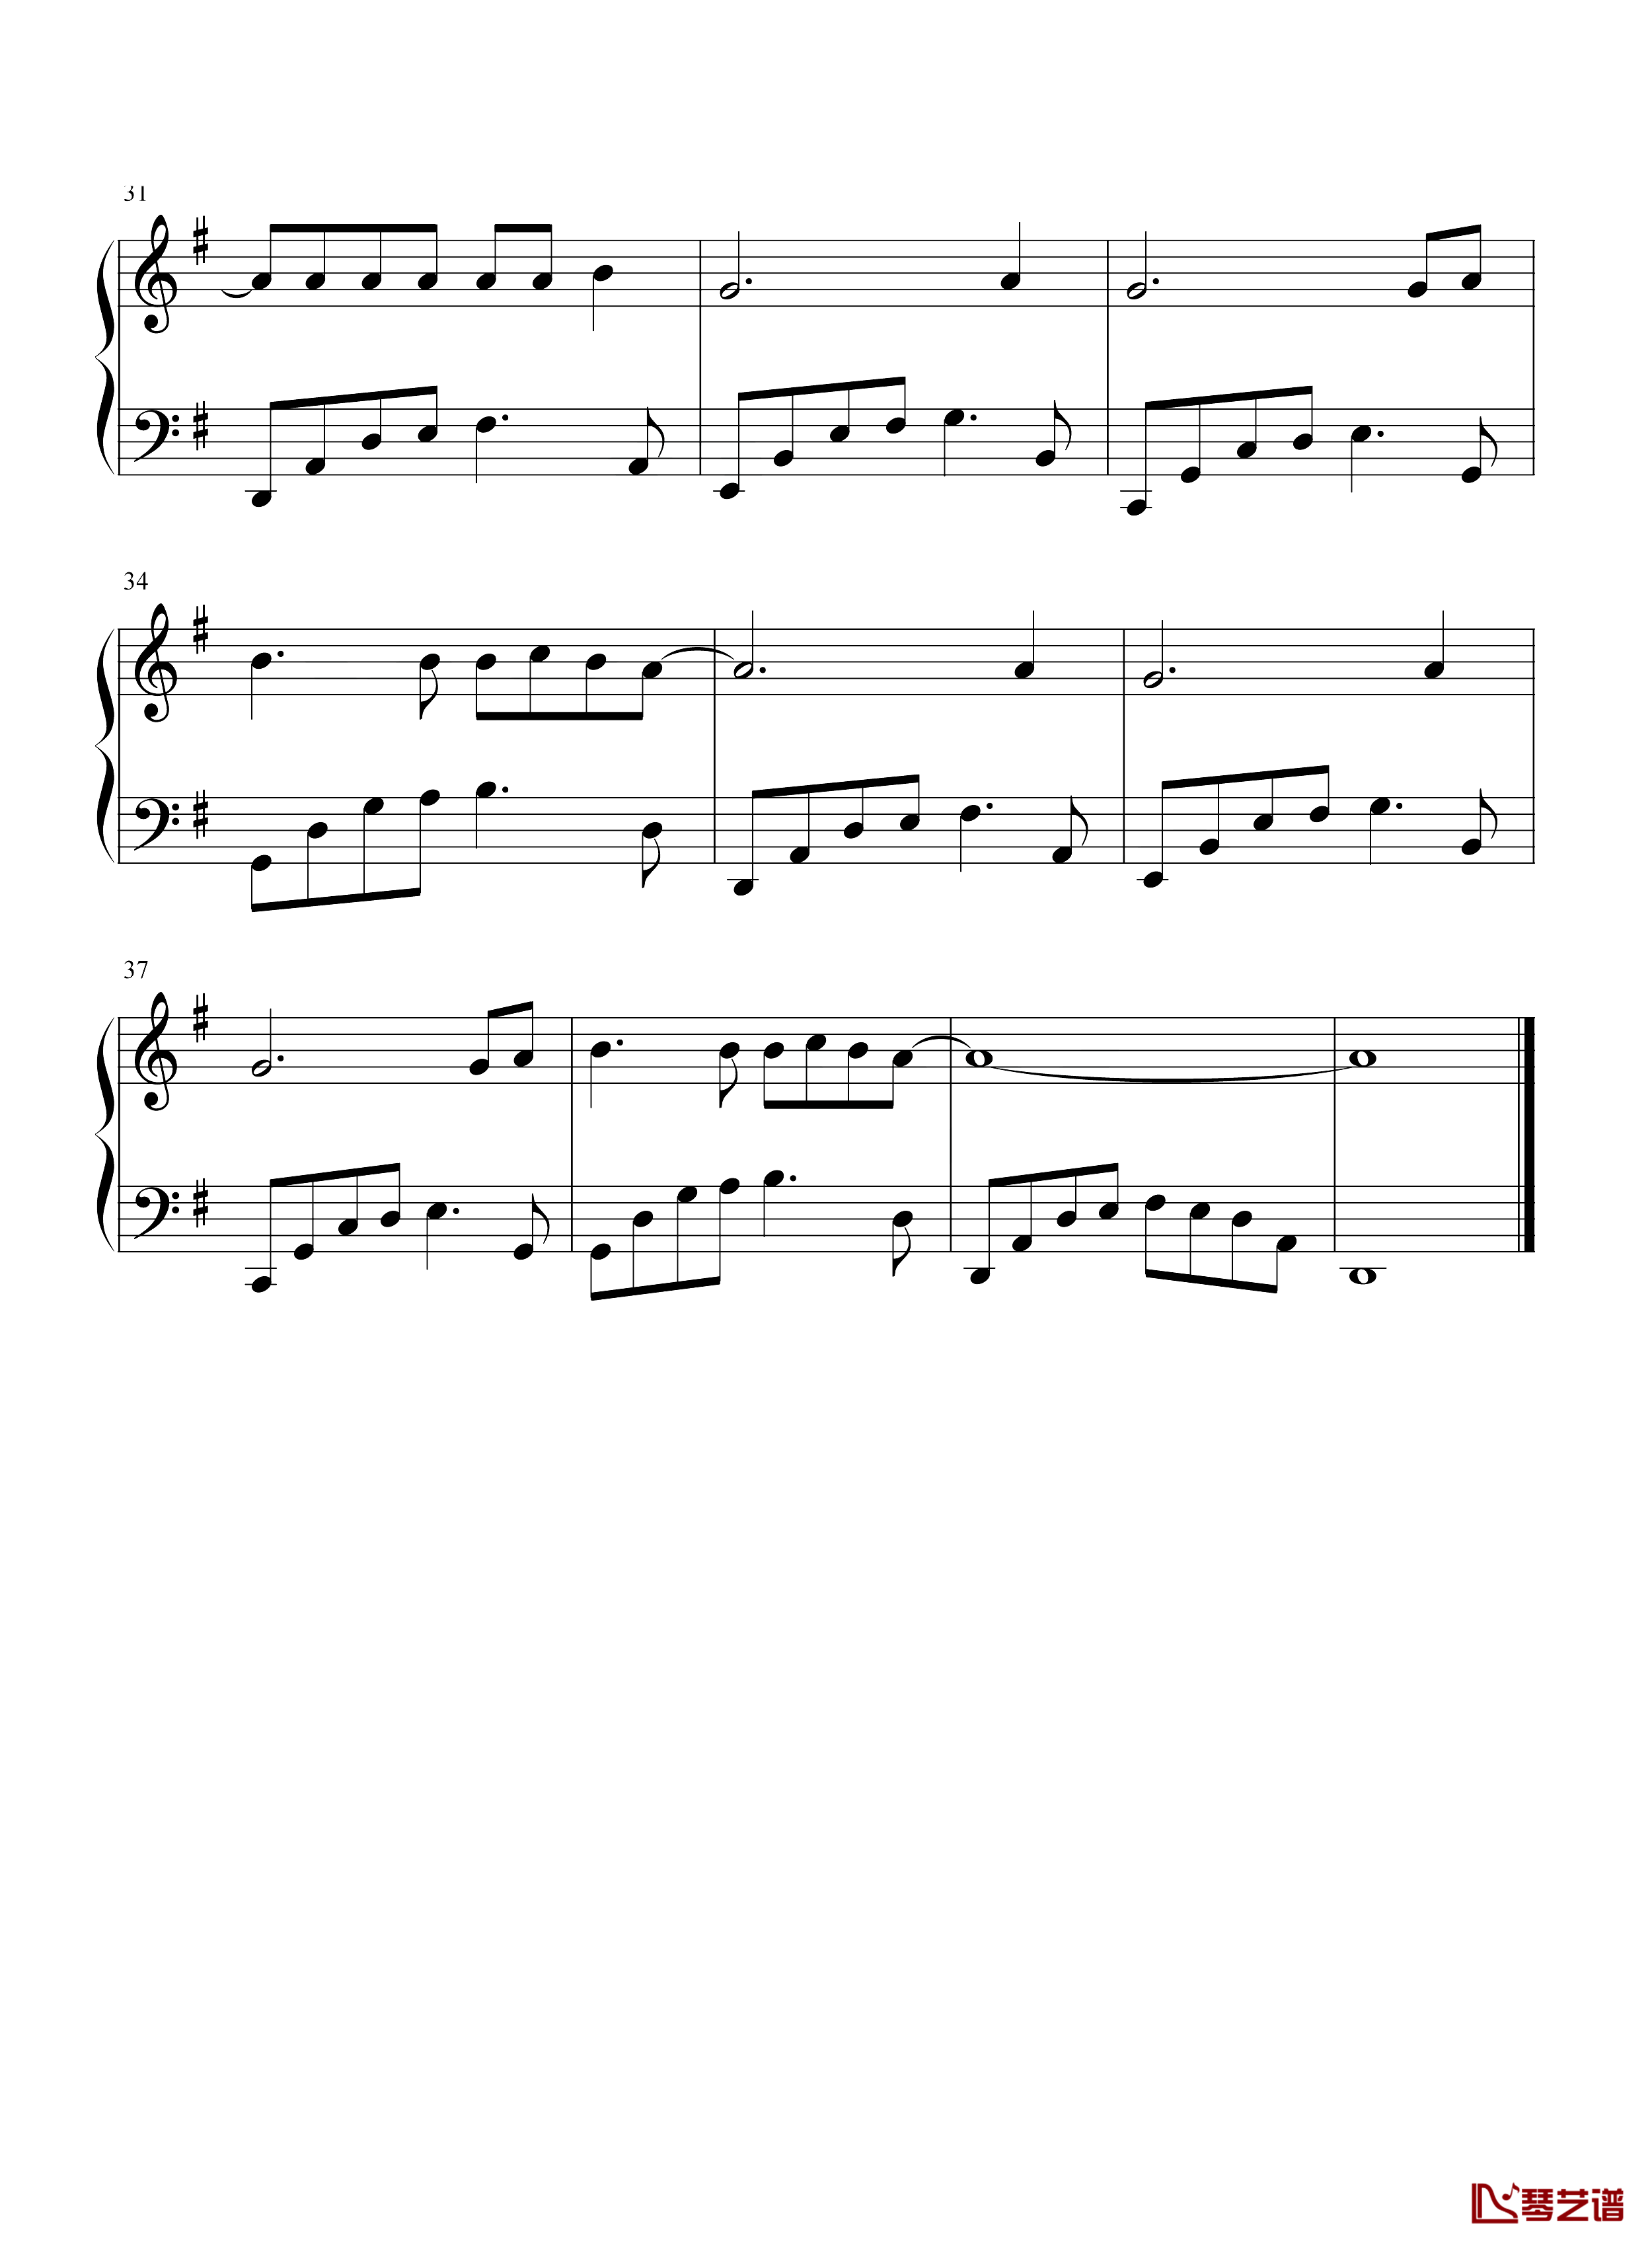 阿衣莫钢琴谱-简单版-阿吉太组合-抖音热歌-优美旋律演绎不一样的民歌3